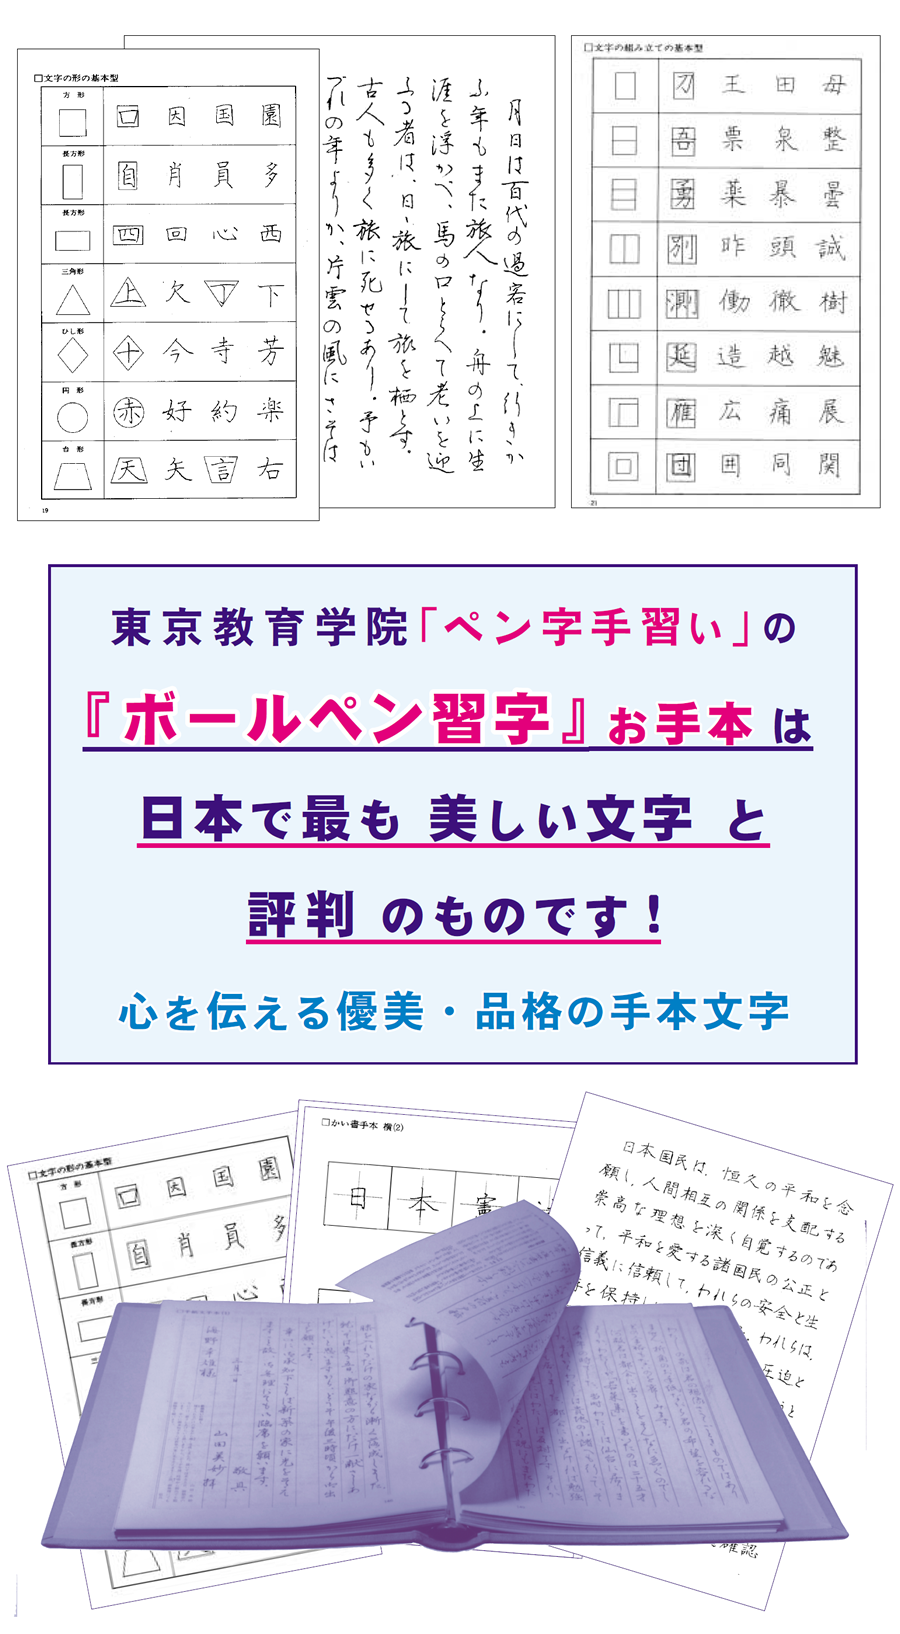 画像：東京教育学院のボールペン習字、ペン字手習いのお手本は日本で最も美しい文字と評判のものです。心を伝える優美・品格の手本です。